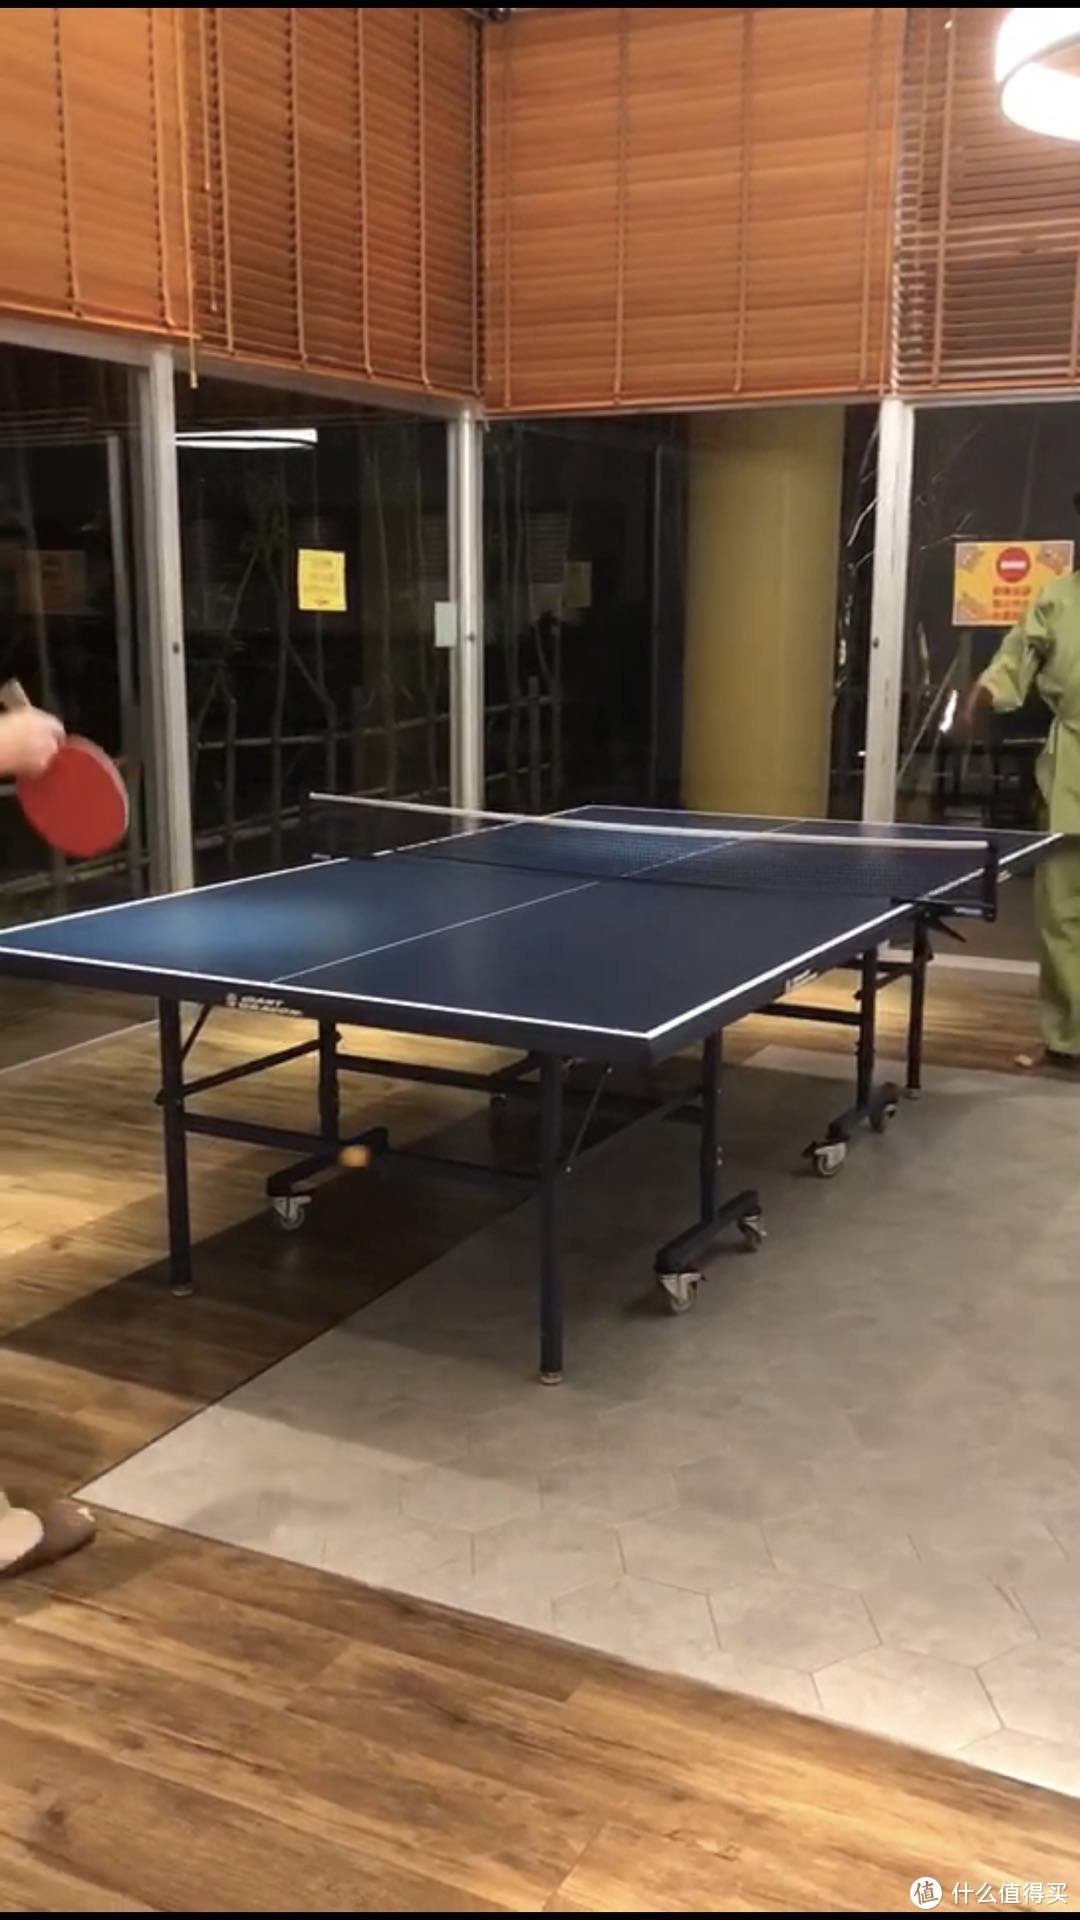 温泉酒店的条件很不错，乒乓球应该是中日都喜欢的竞赛运动了